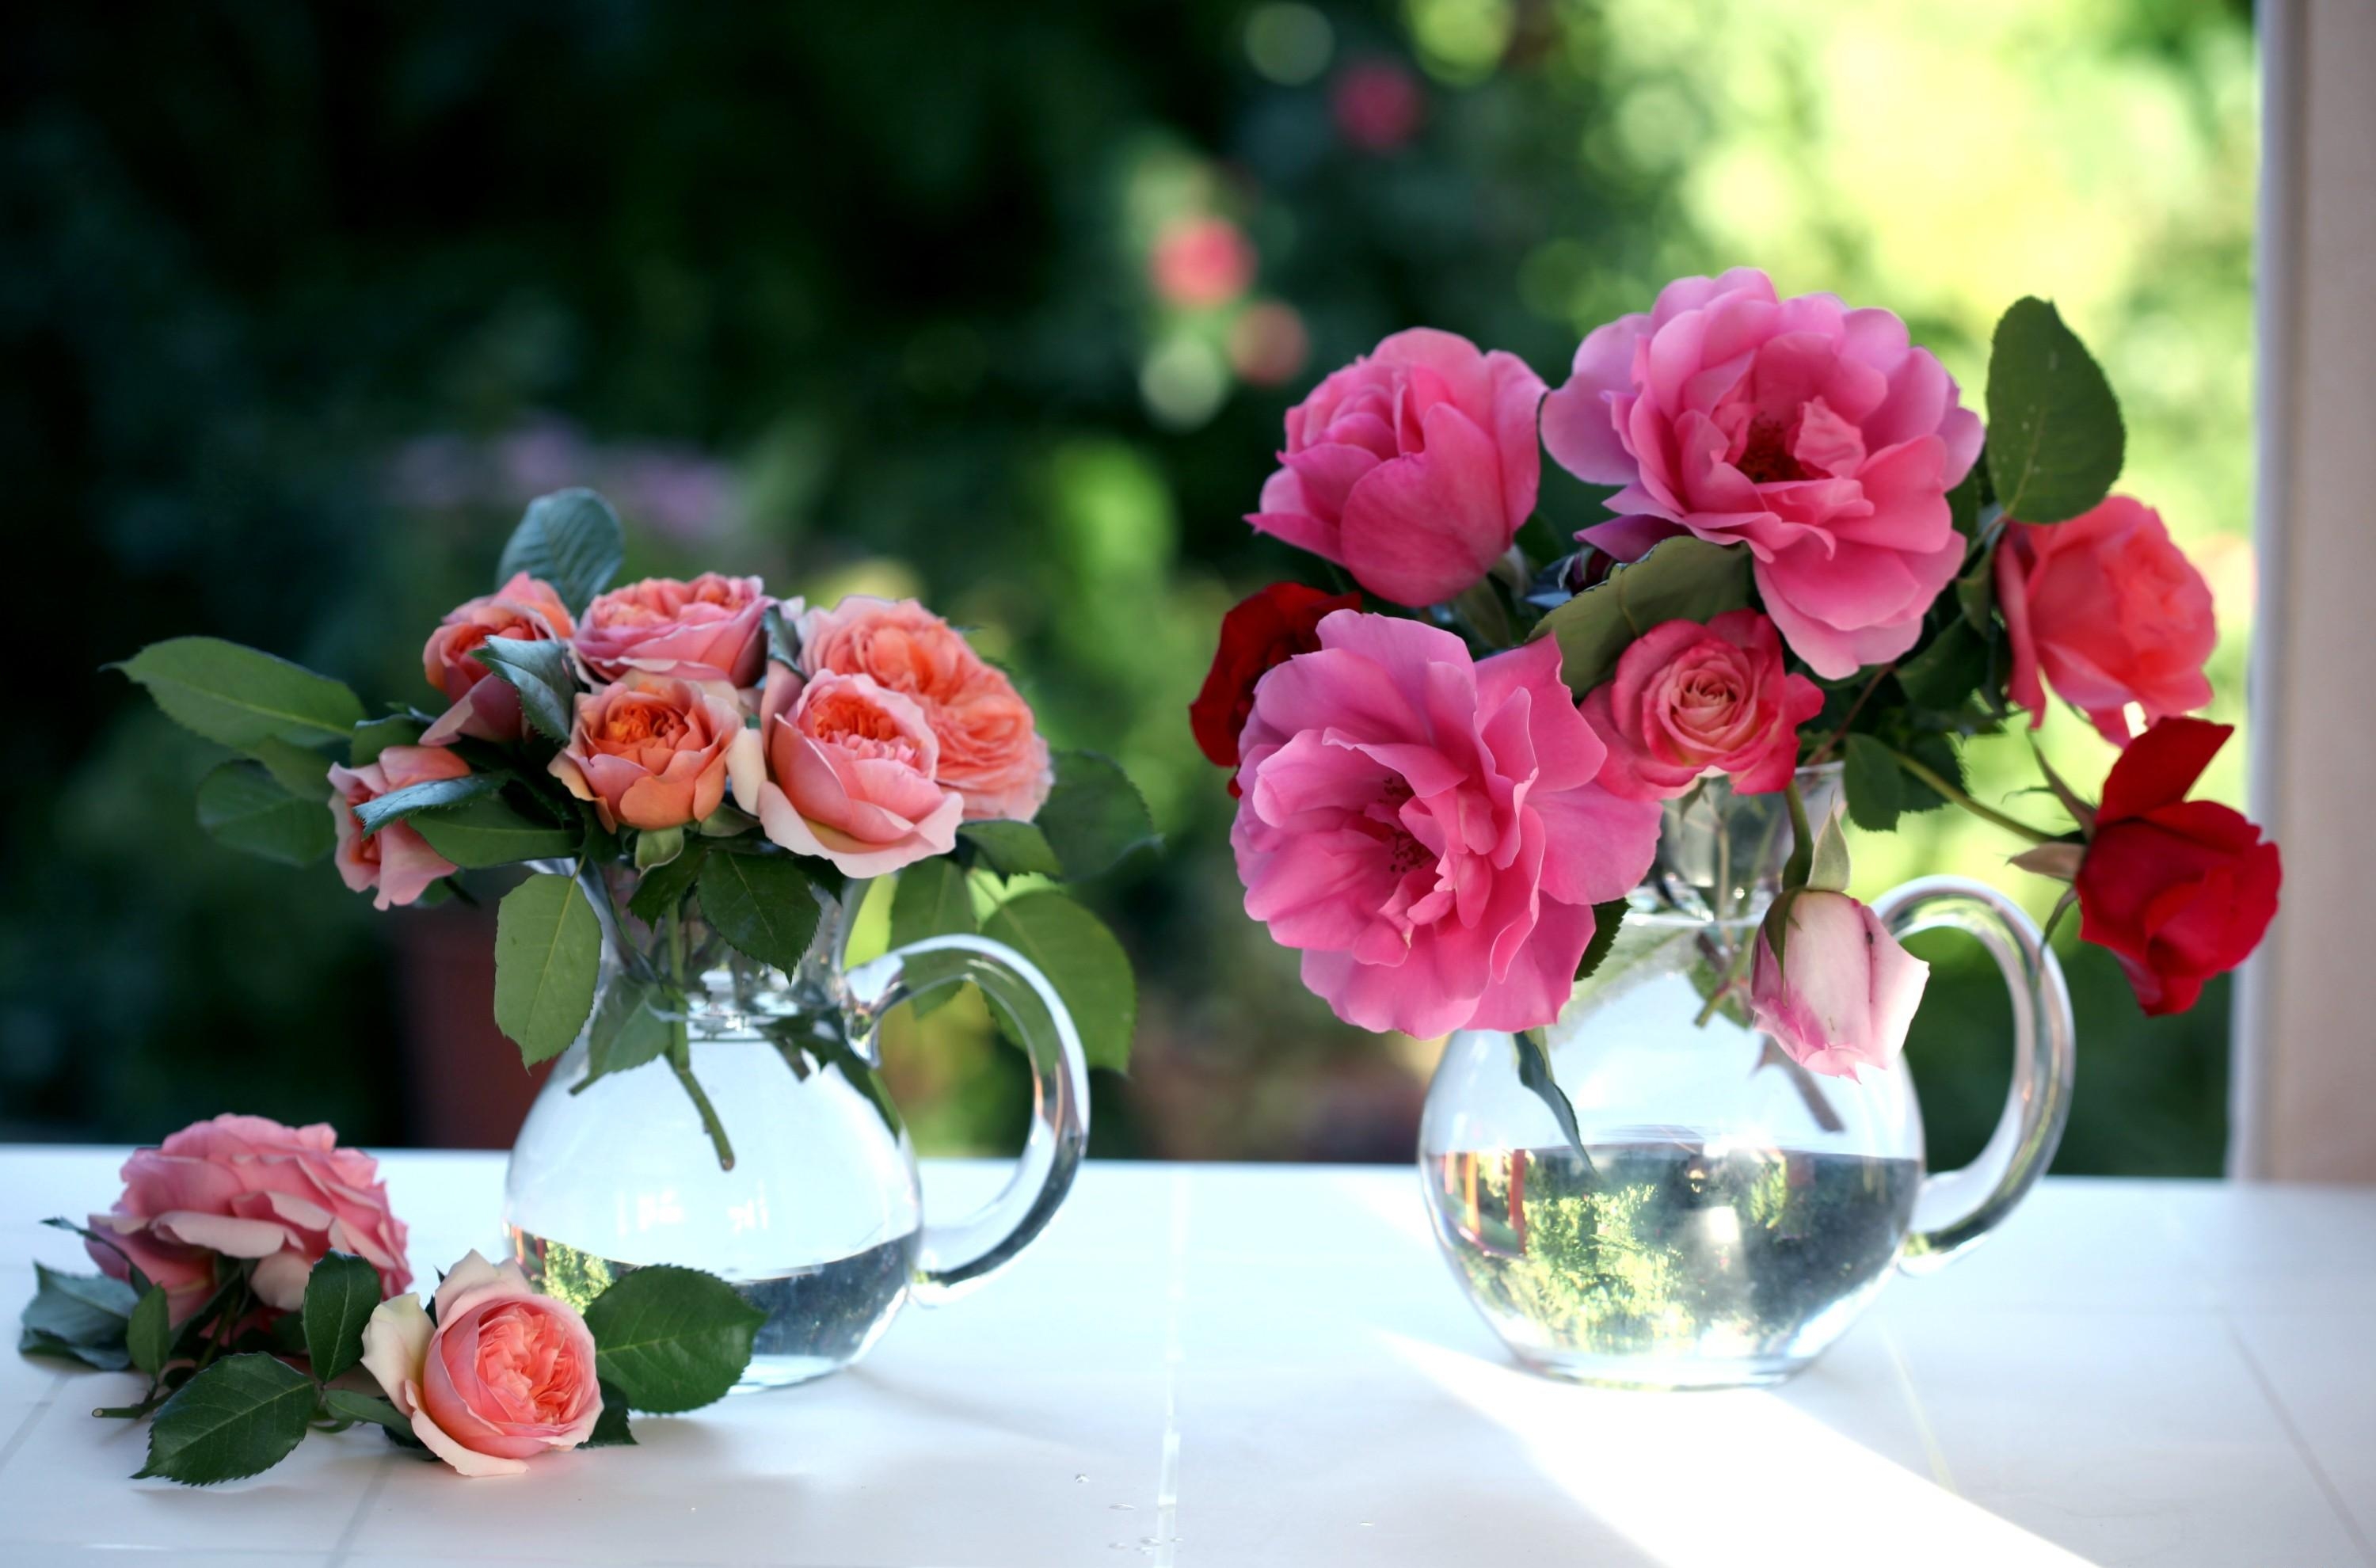 jugs, window, roses, flowers, bouquets HD wallpaper